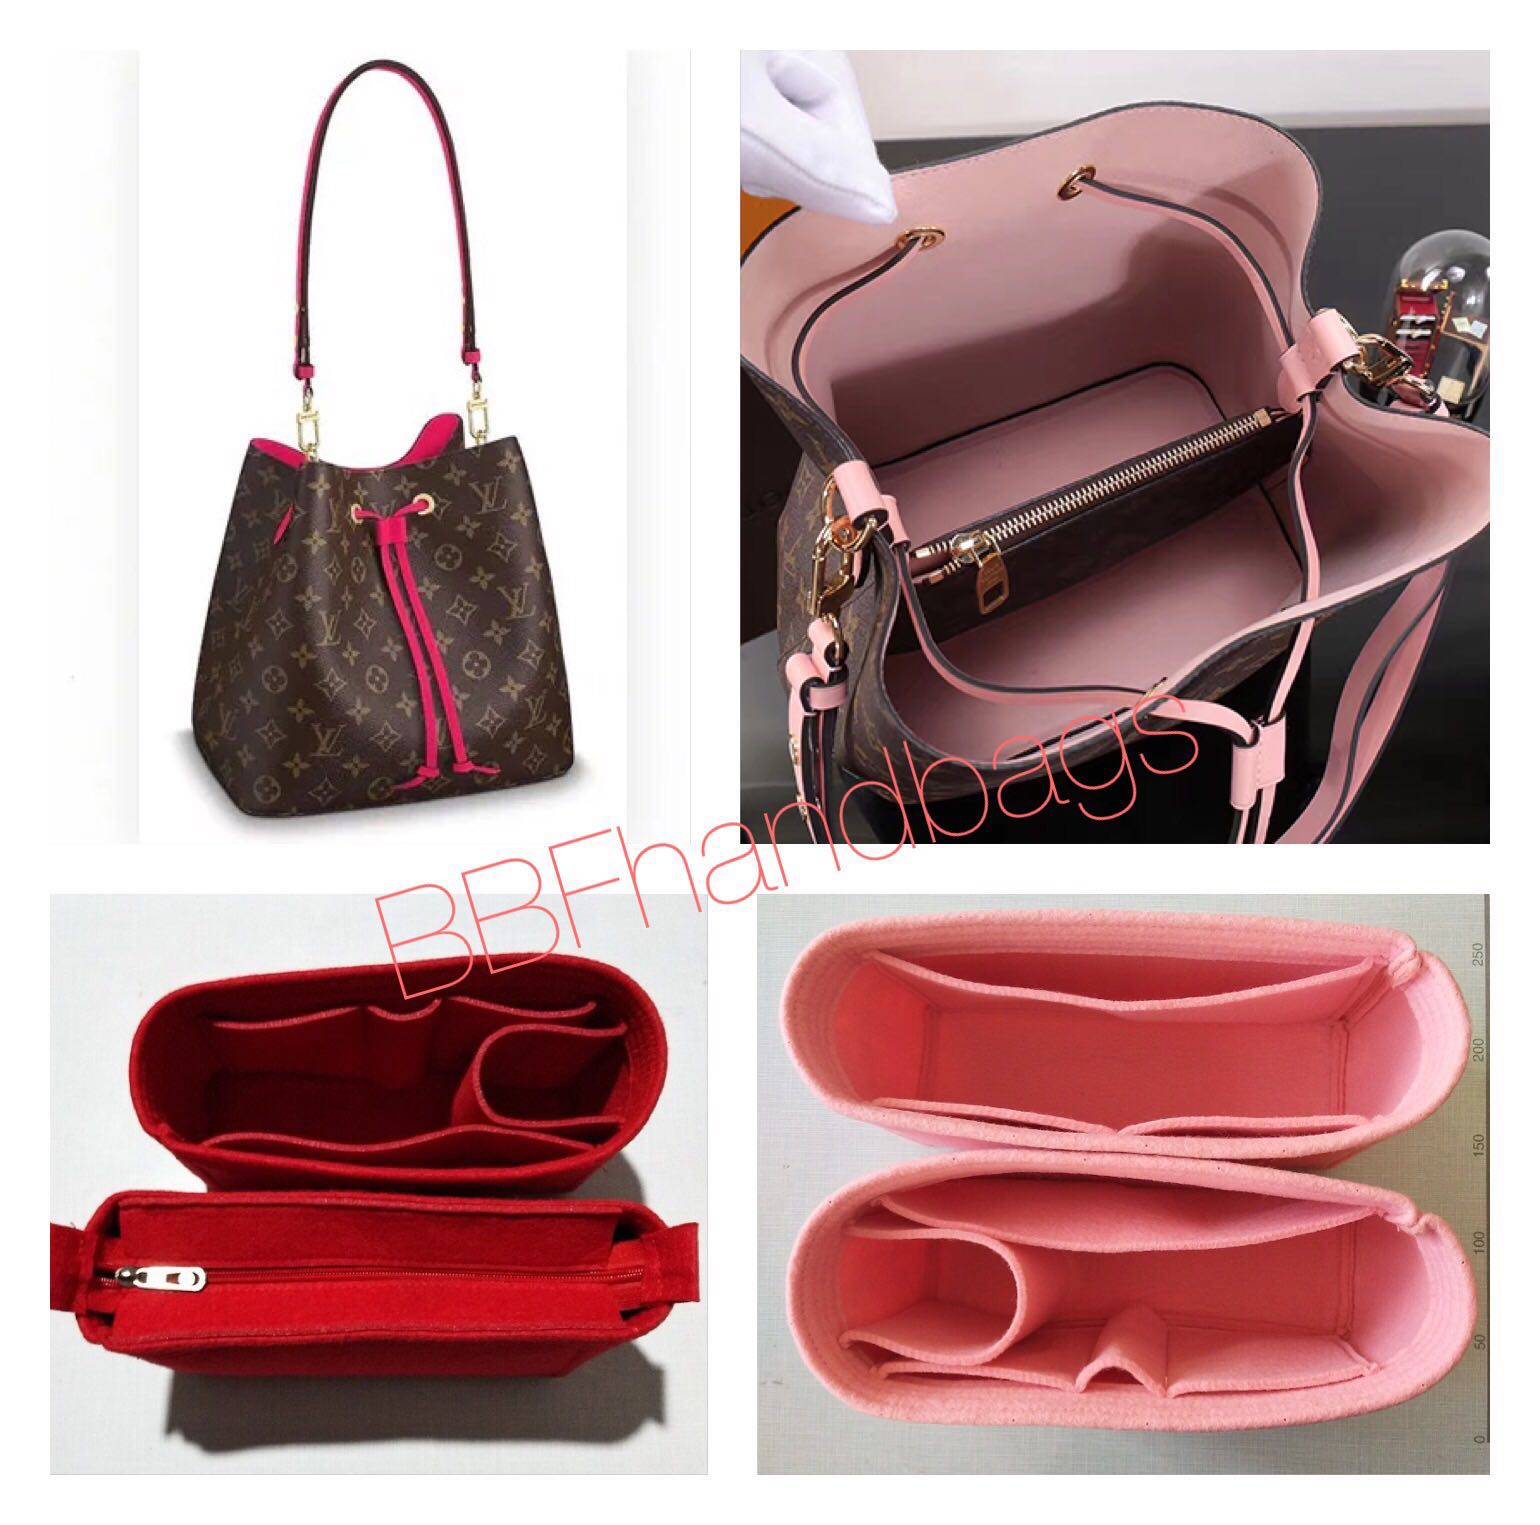 LV NeoNoe Bag Shaper & Felt Organizer, Luxury, Bags & Wallets on